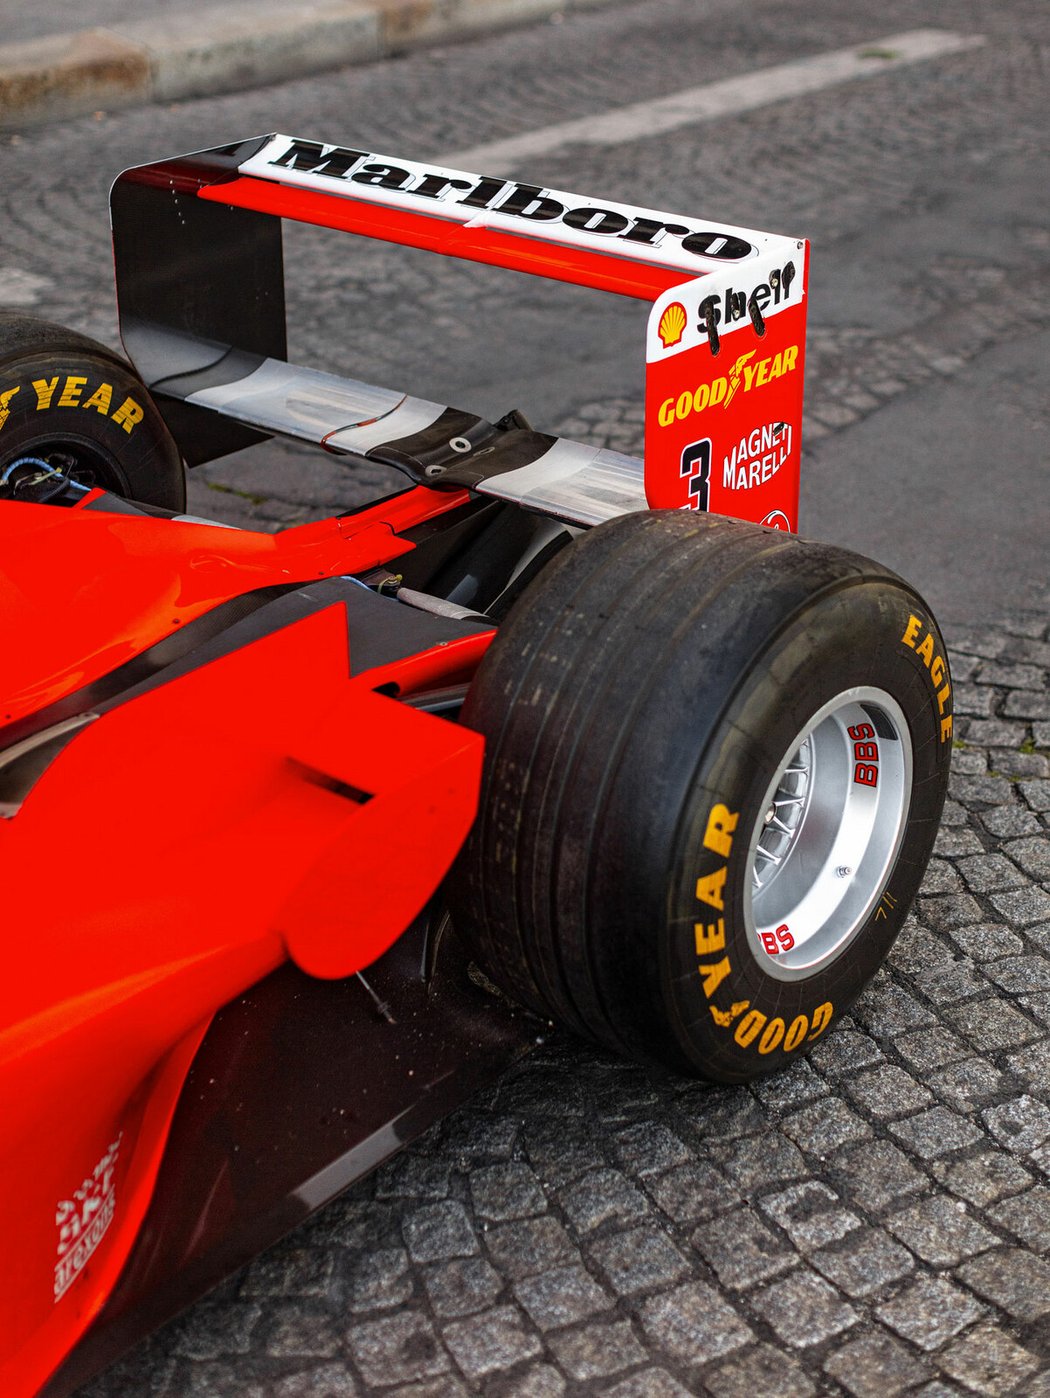 Ferrari F300 (1998)